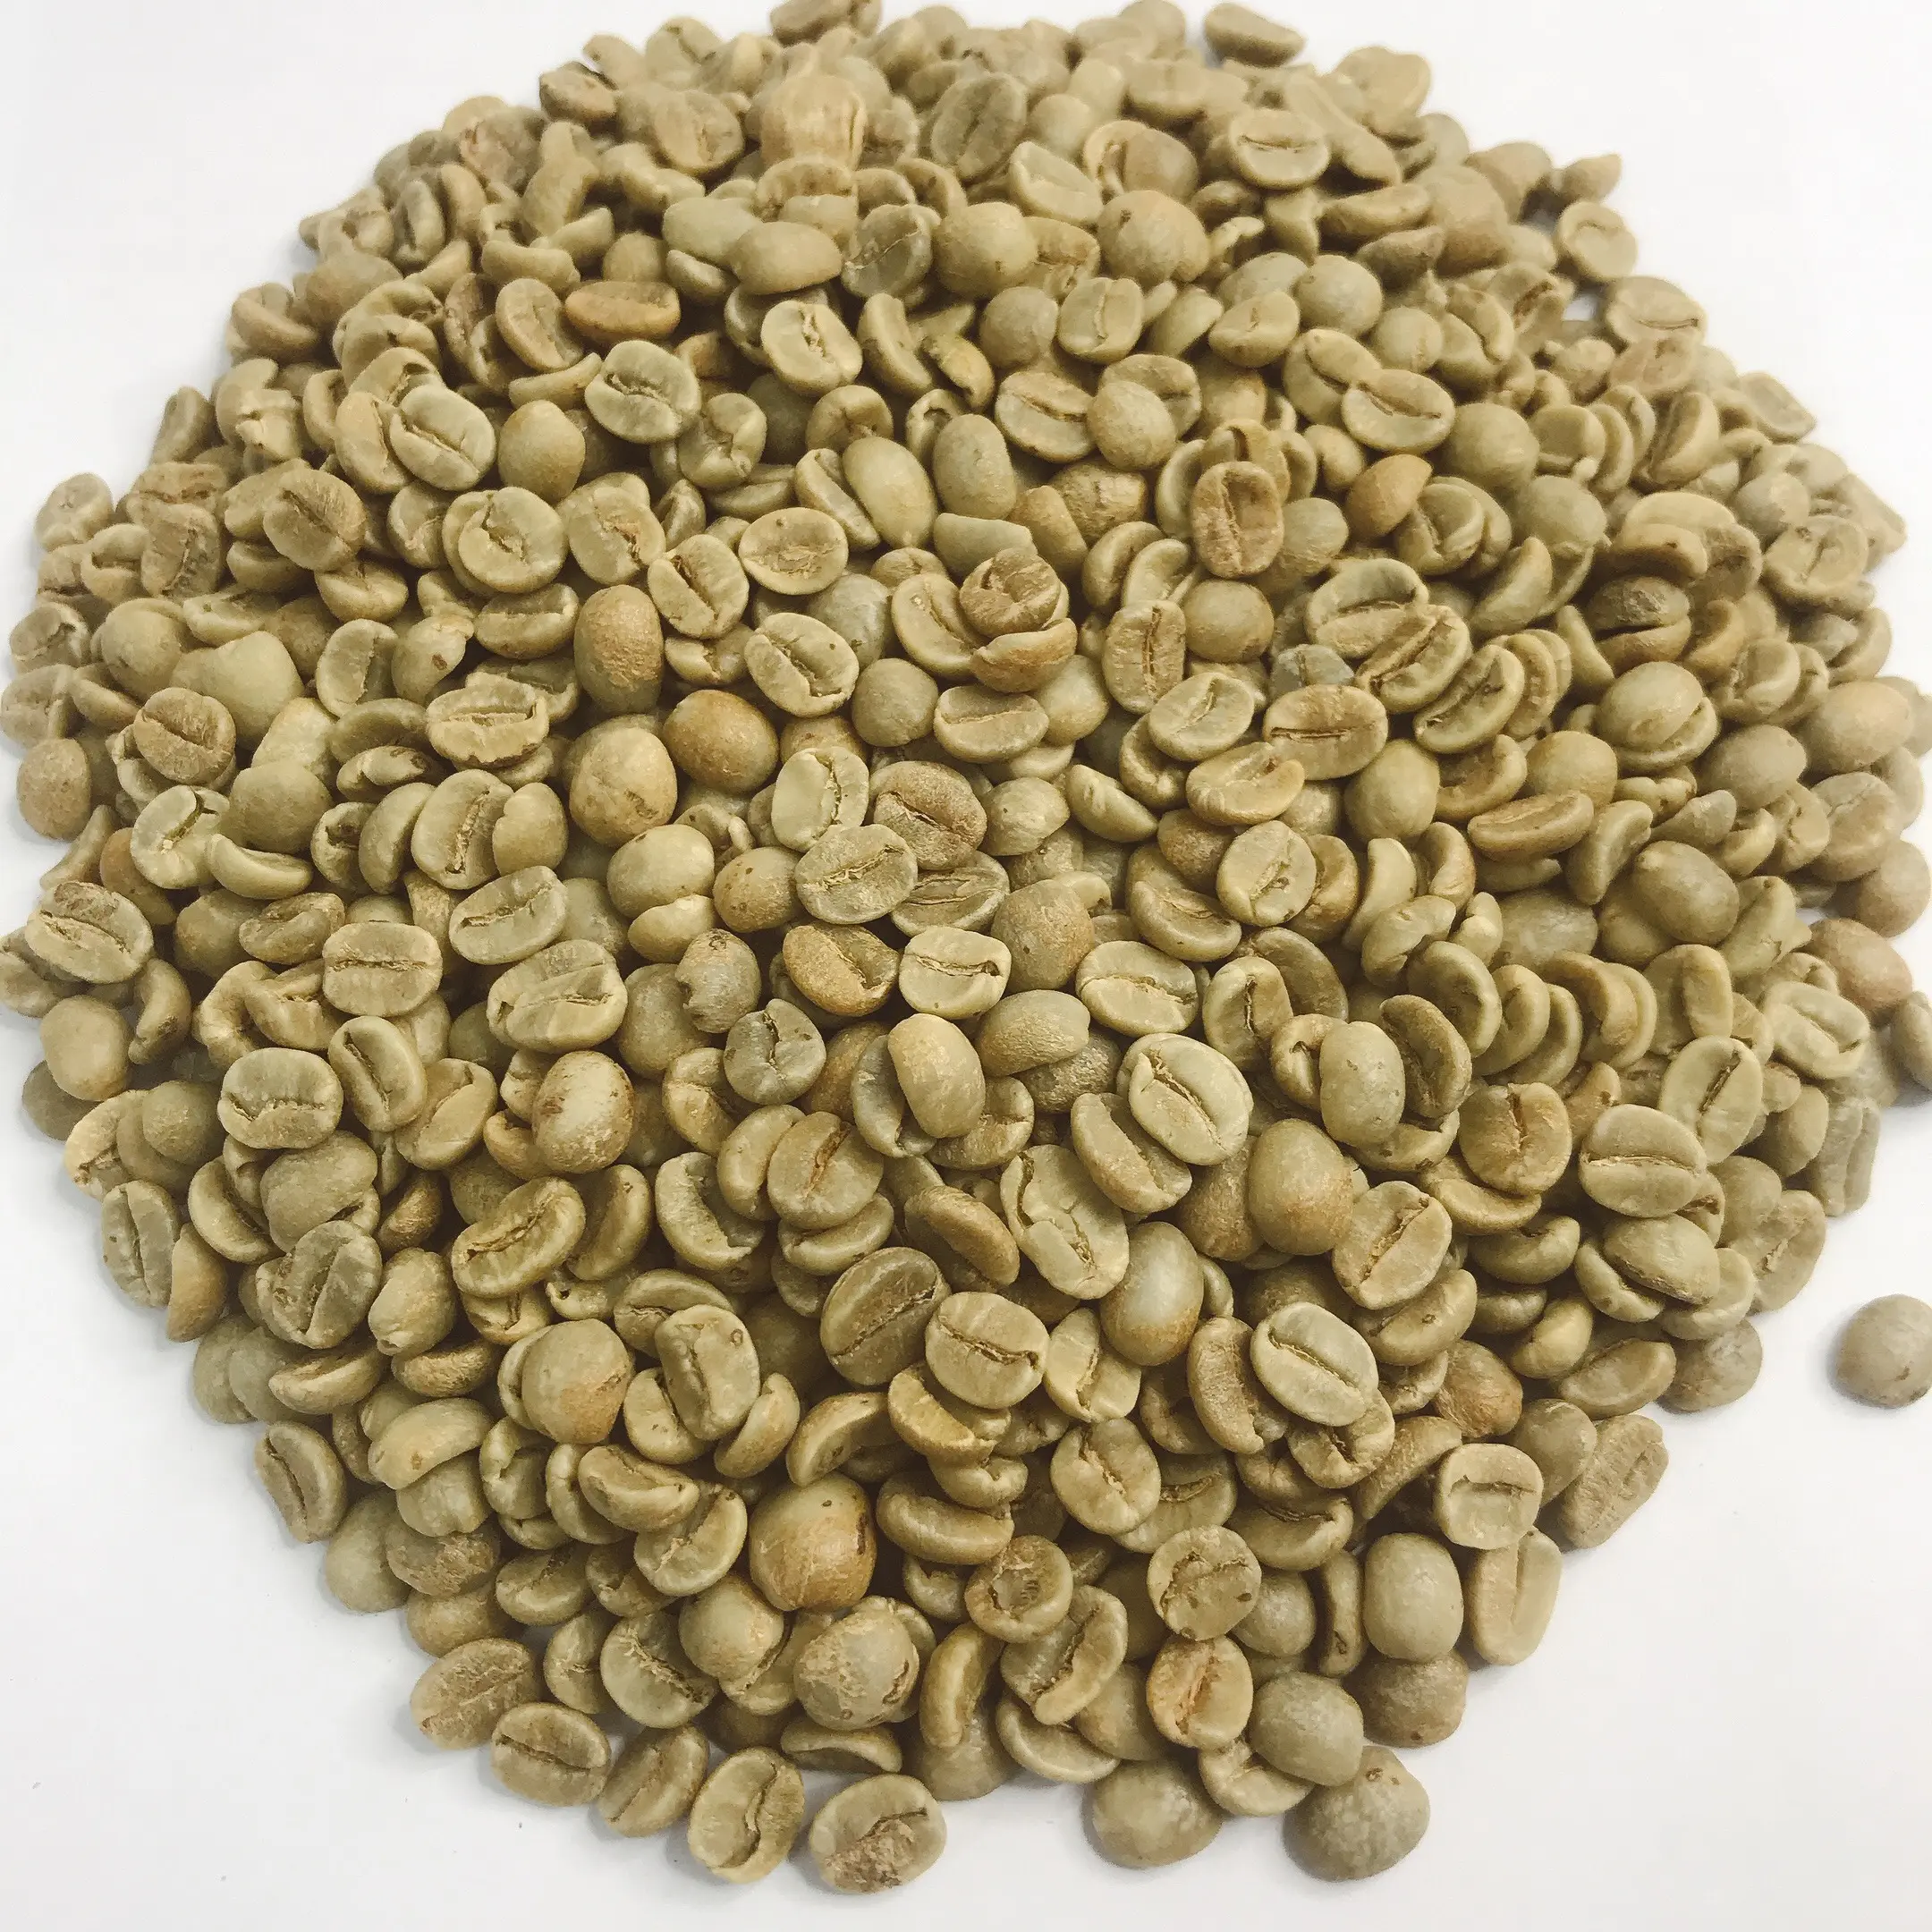 กาแฟ Detech เมล็ดกาแฟอาราบิก้าสีเขียวคั่วระดับพรีเมี่ยมจากเวียดนามเมล็ดกาแฟอาราบิก้าคุณภาพสูง100% เป็นธรรมชาติพร้อมส่งประมาณ th